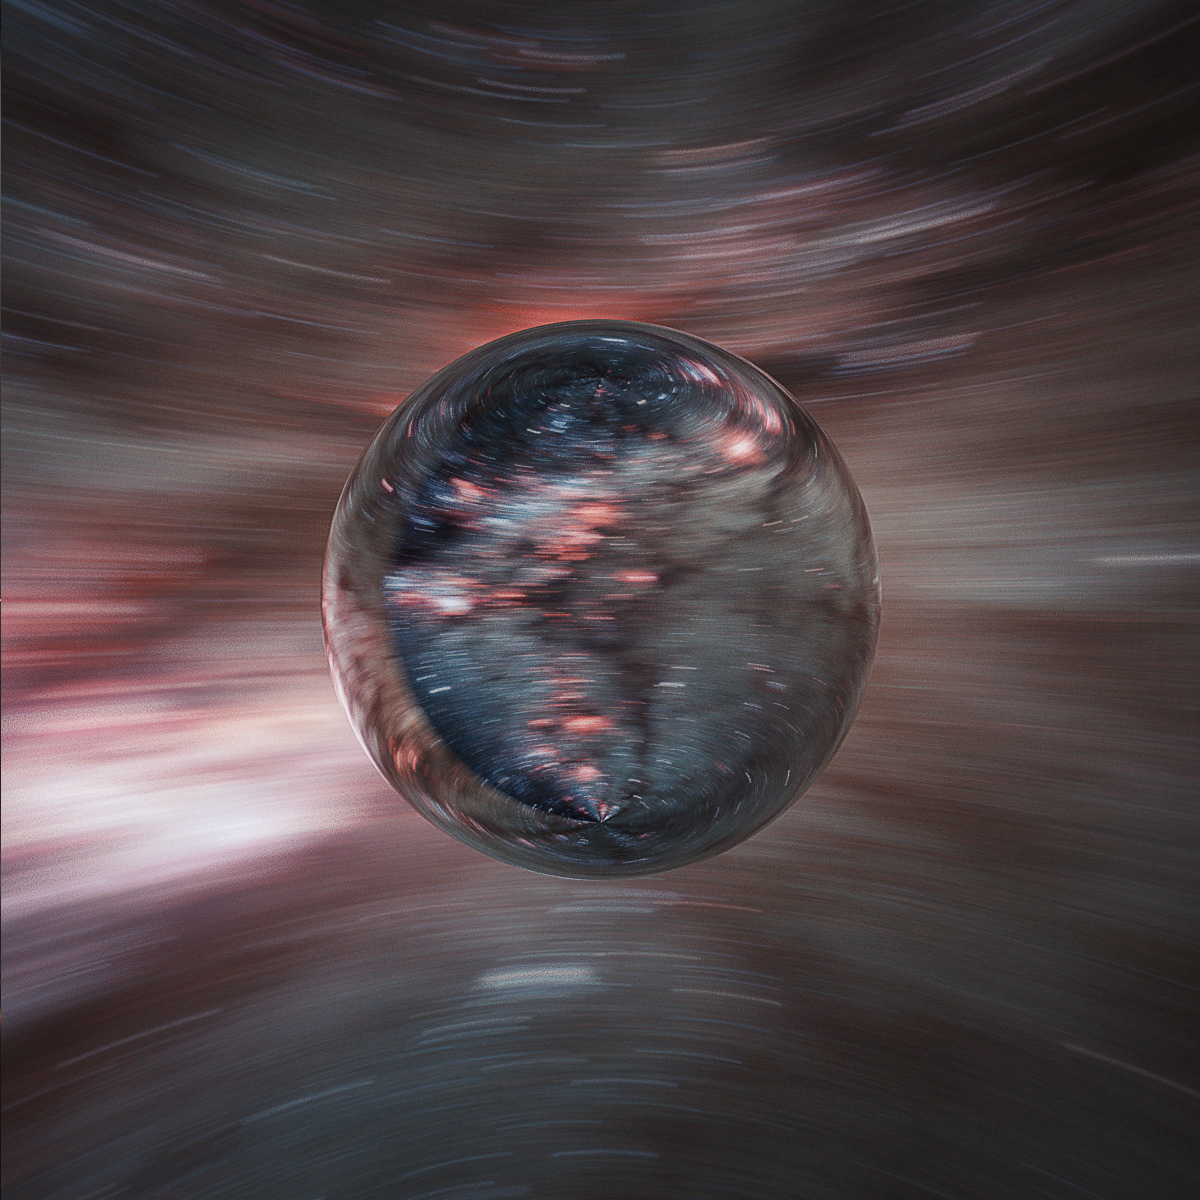 interstellar 3D hyperspace Cinema effects